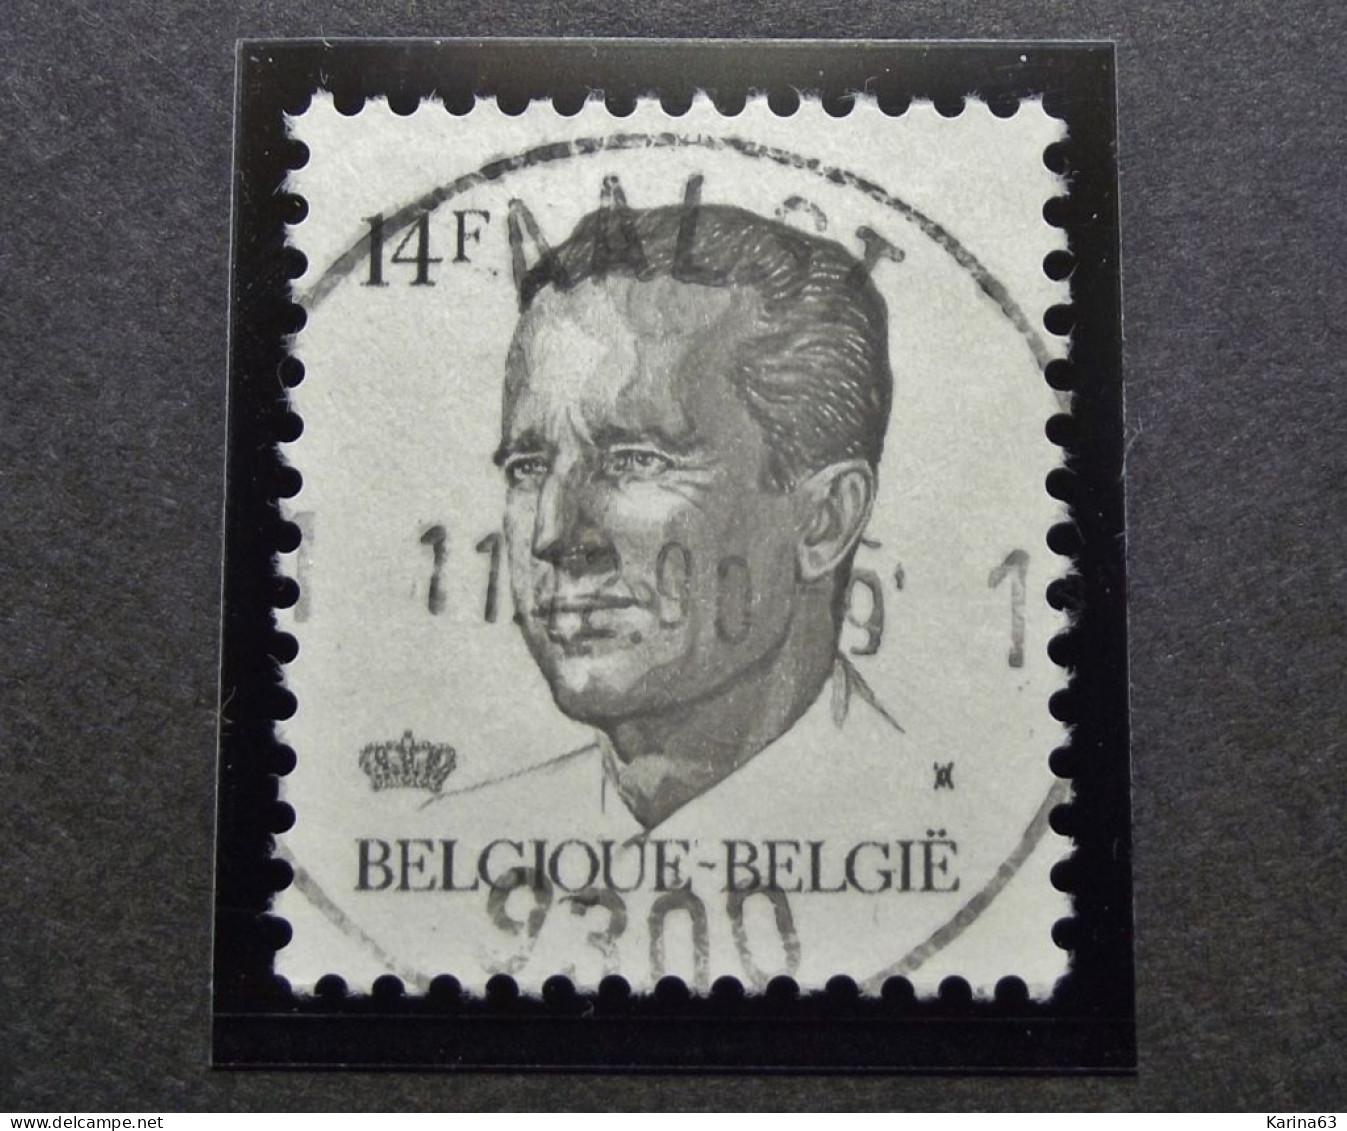 Belgie Belgique - 1990 -  OPB/COB  N° 2352 - 14 F  - Obl.  - AALST - 1990 - Gebruikt